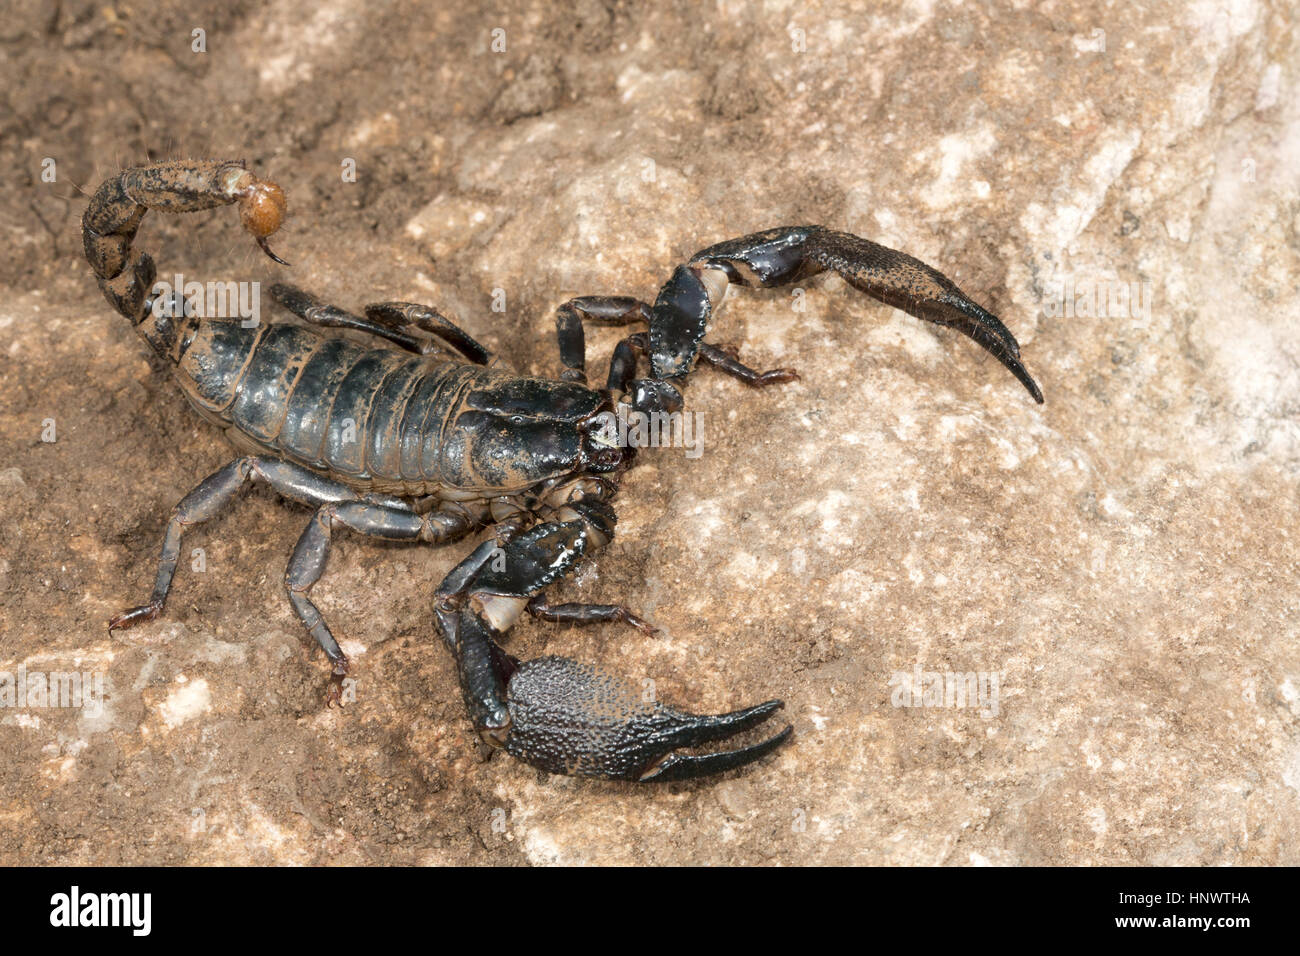 Grabende Skorpion, Heterometrus SP., Barnawapara WLS, Chhattisgarh. Großer  Skorpion mit massiven Scheren. Männchen hat deutlich größere Scheren als  die fe Stockfotografie - Alamy